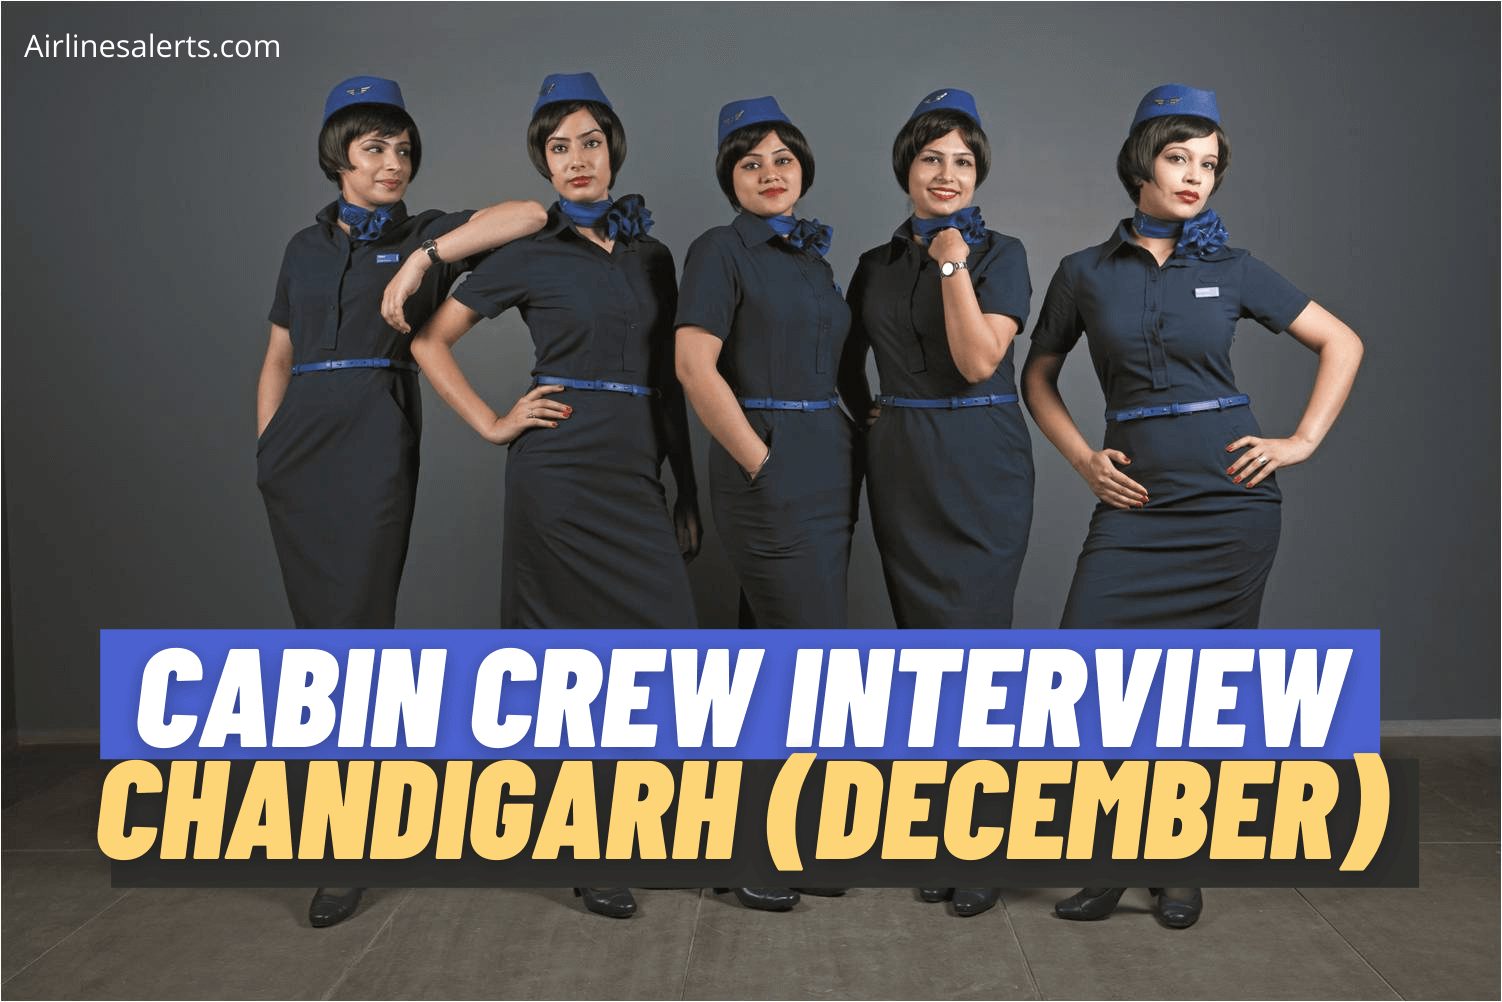 Indigo Cabin Crew Recruitment Chandigarh Interview Check Details & Apply Online 